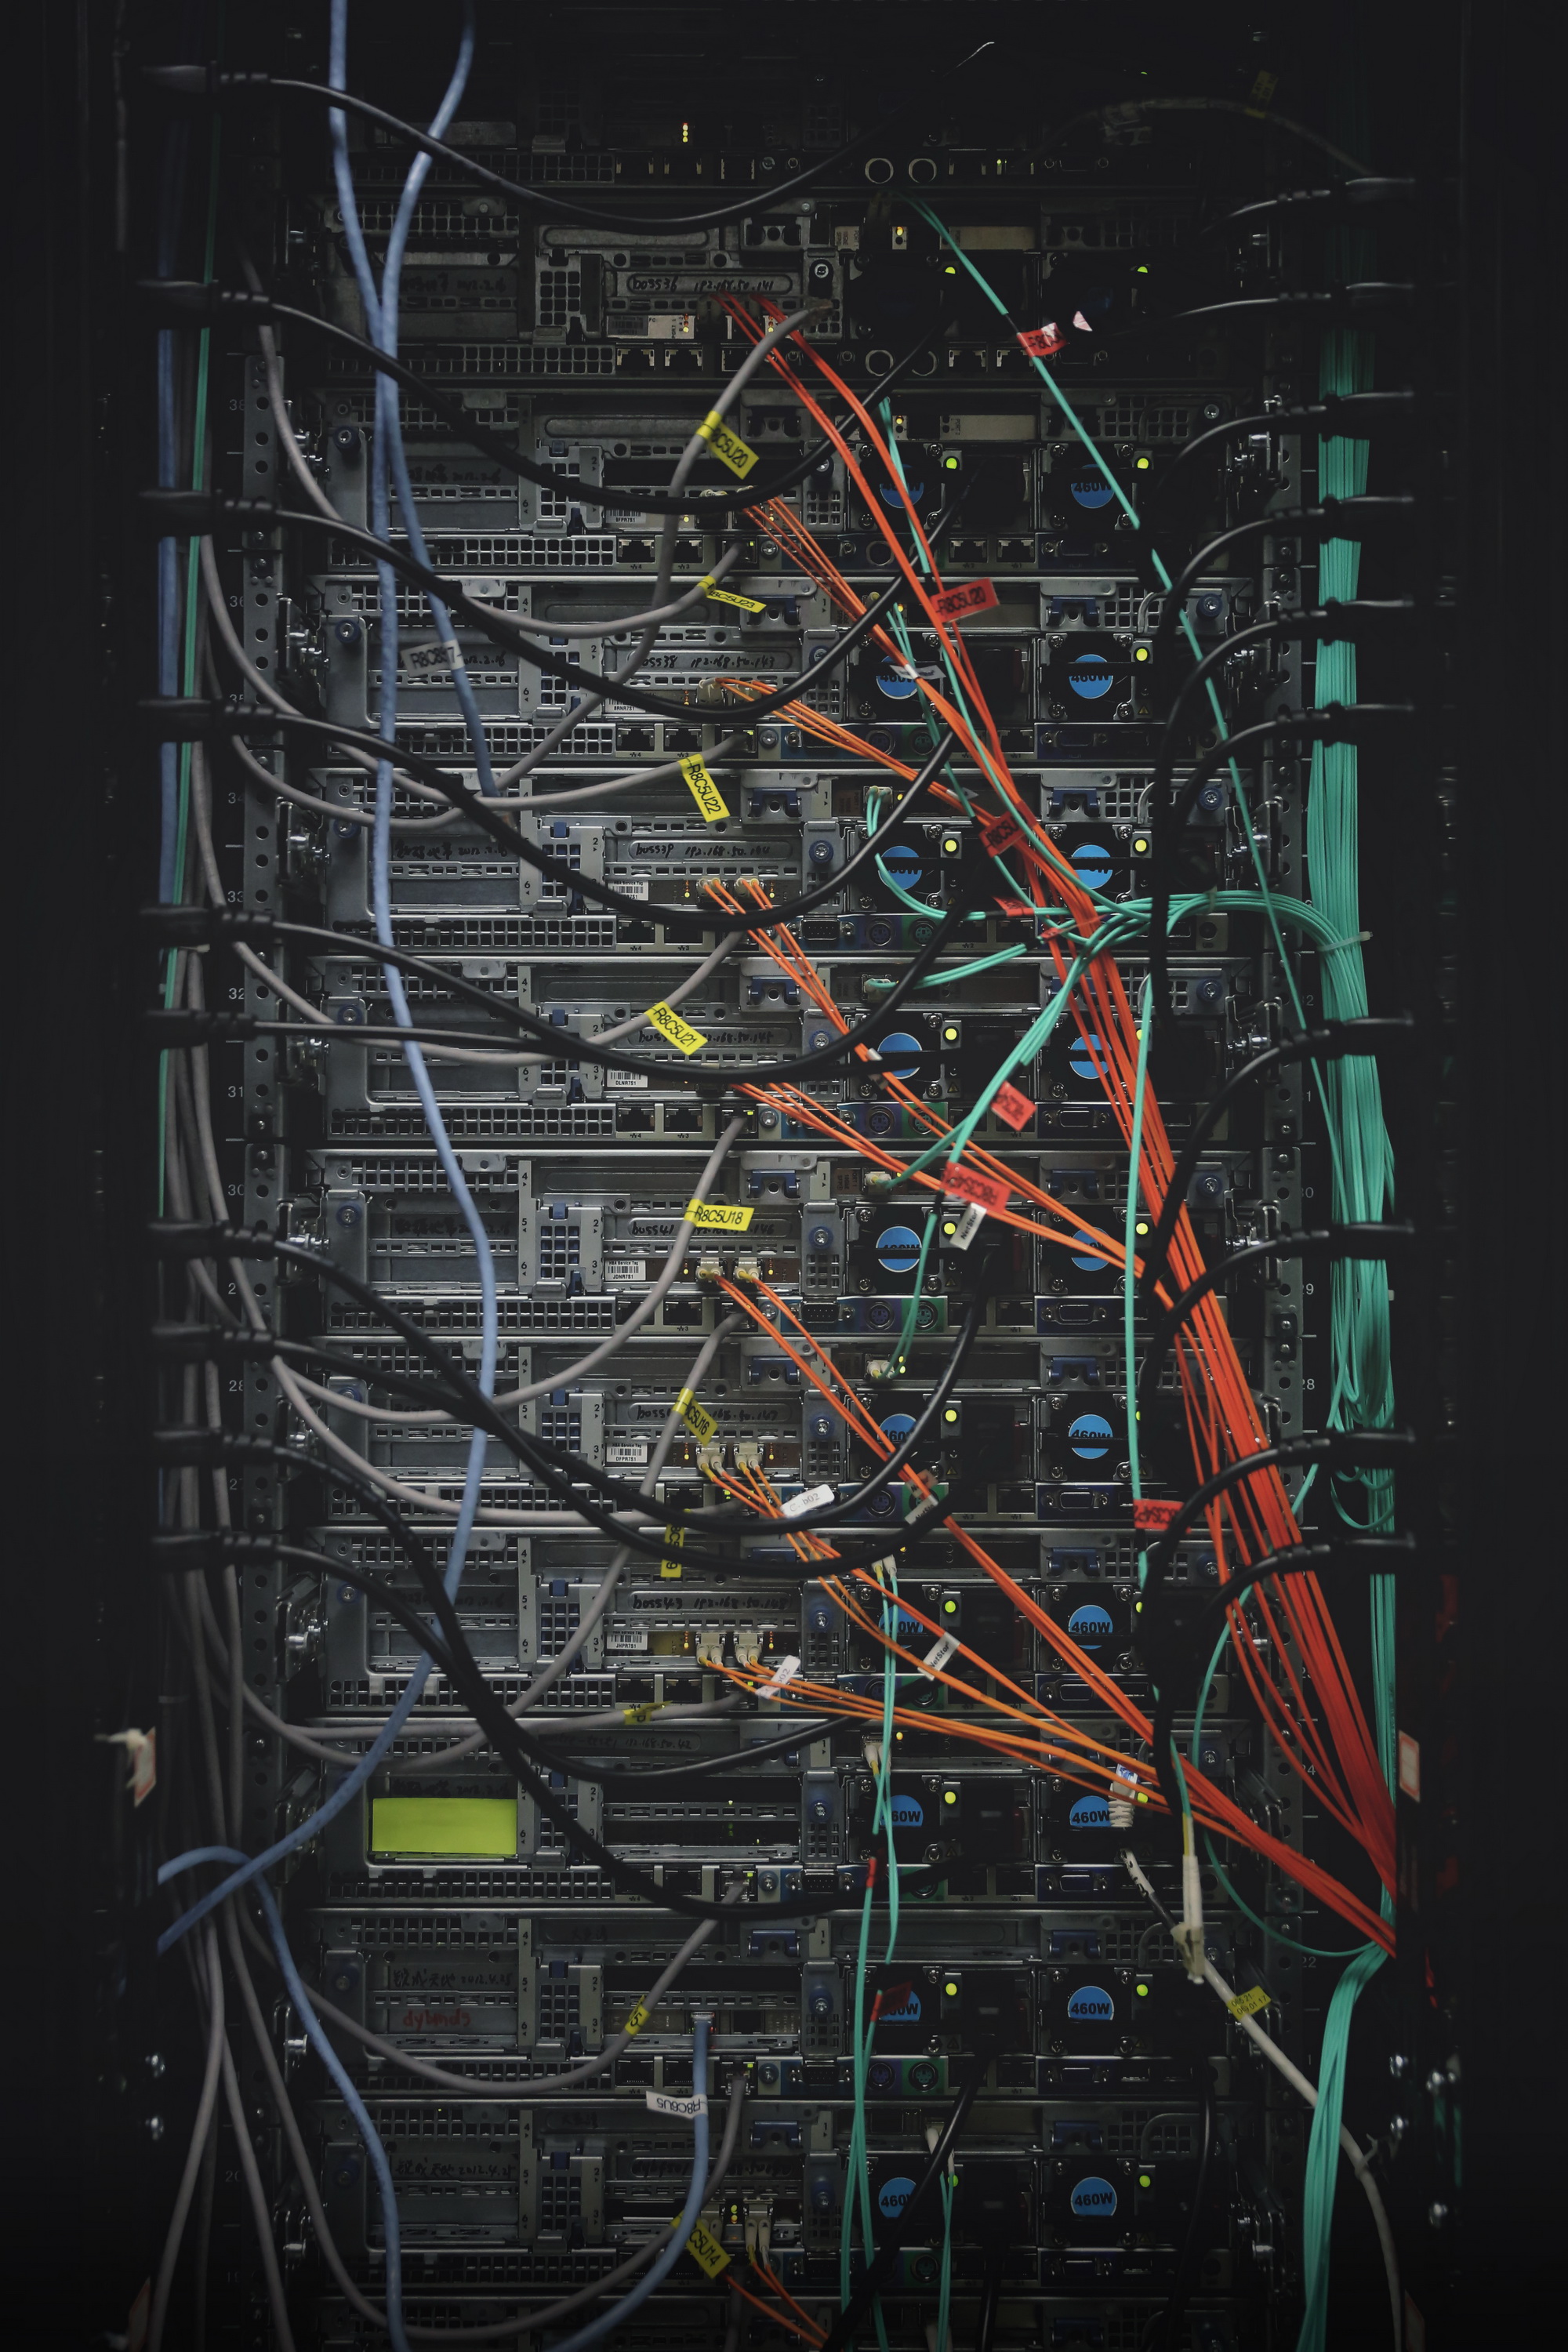 最佳人气奖 一簇光纤 摄于高能所存储实验数据的机房 拍摄者：朱桔